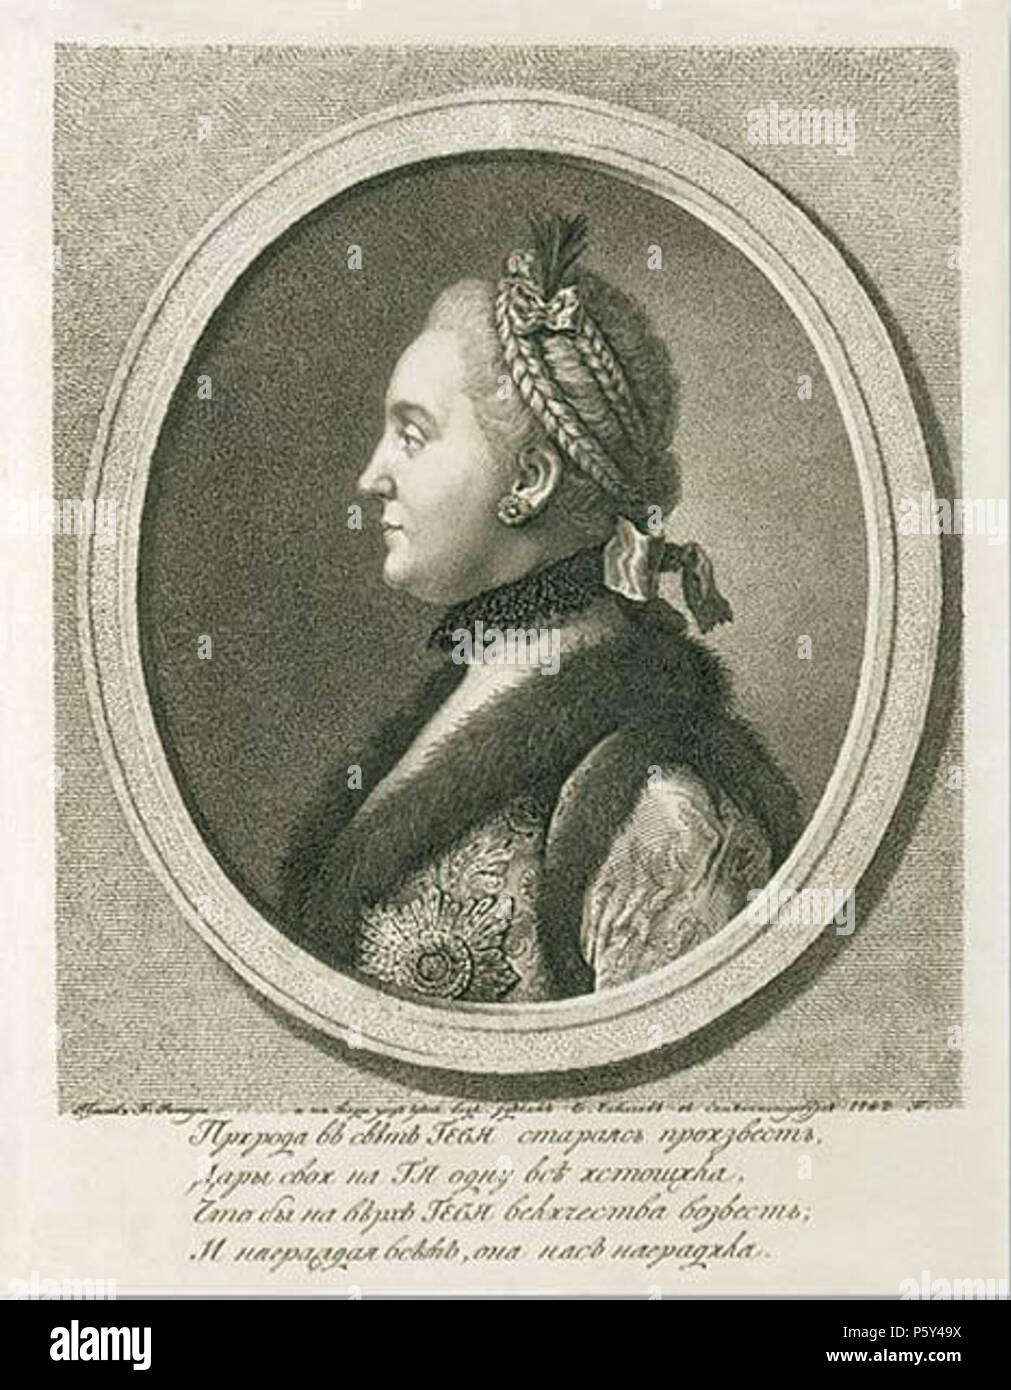 N/A. Englisch: Katharina II. von Russland, Kaiserin von Russland, Katharina II., der Große (1729-1796) Deutsch: Katharina II. die Große (1729-1796) Zarin von Russland:,,, 1758 (). II,,,,,. , II''. ,,,,. . ,, (1743-1810), II:',,,,'4,. .. ,.. . 1762. Yevgraf Chemesov nach Rotari 516 graviert Profil von Katharina II. von E.Chemesov nach Rotari (1762) Stockfoto